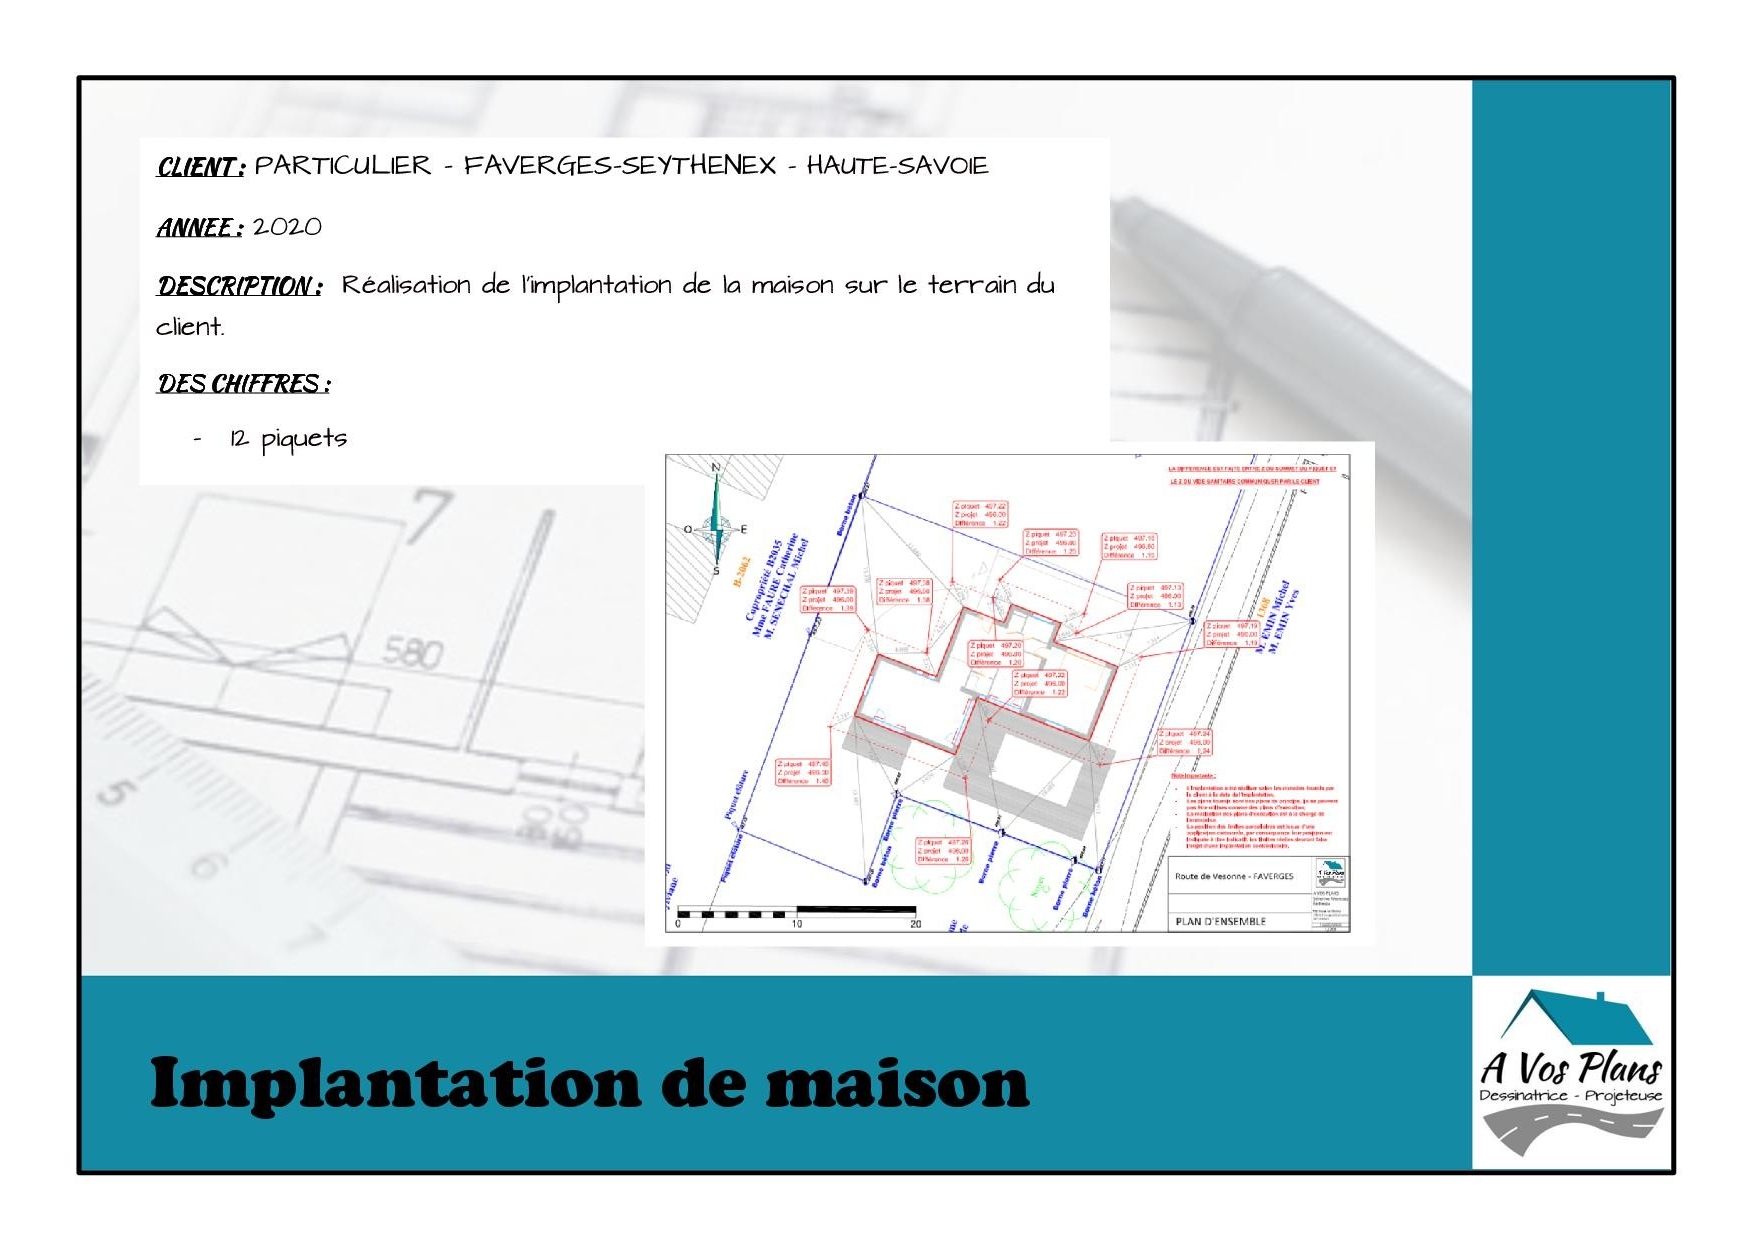 Ref 2020 PARTICULIER IMPLANTATION DE MAISON